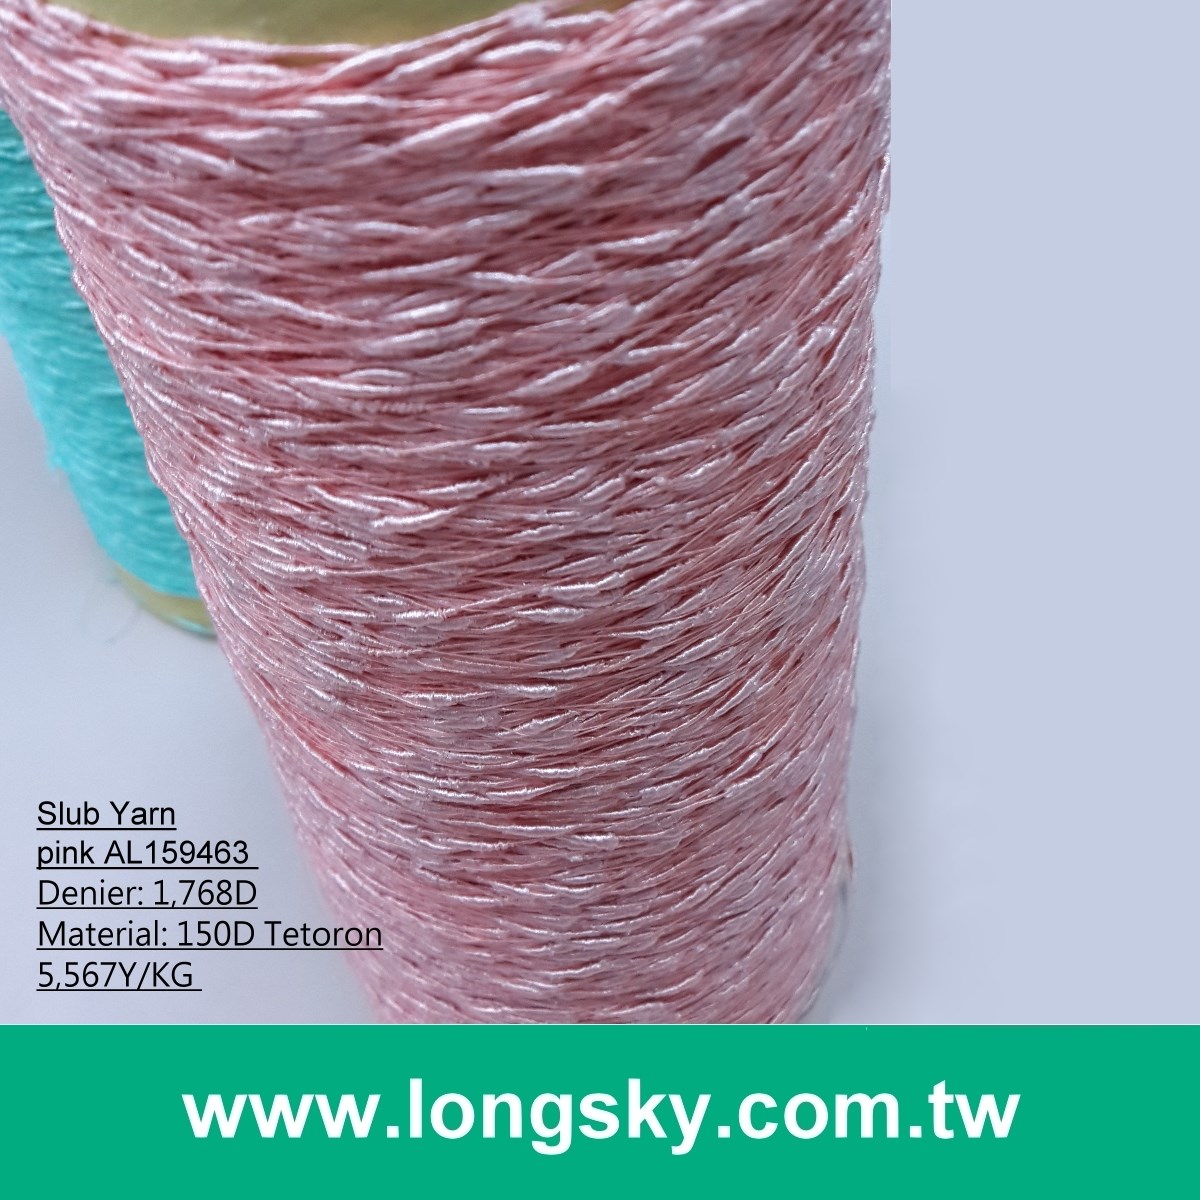 (AL-15) Variety style of polyester slub yarn for knitwear from Taiwan